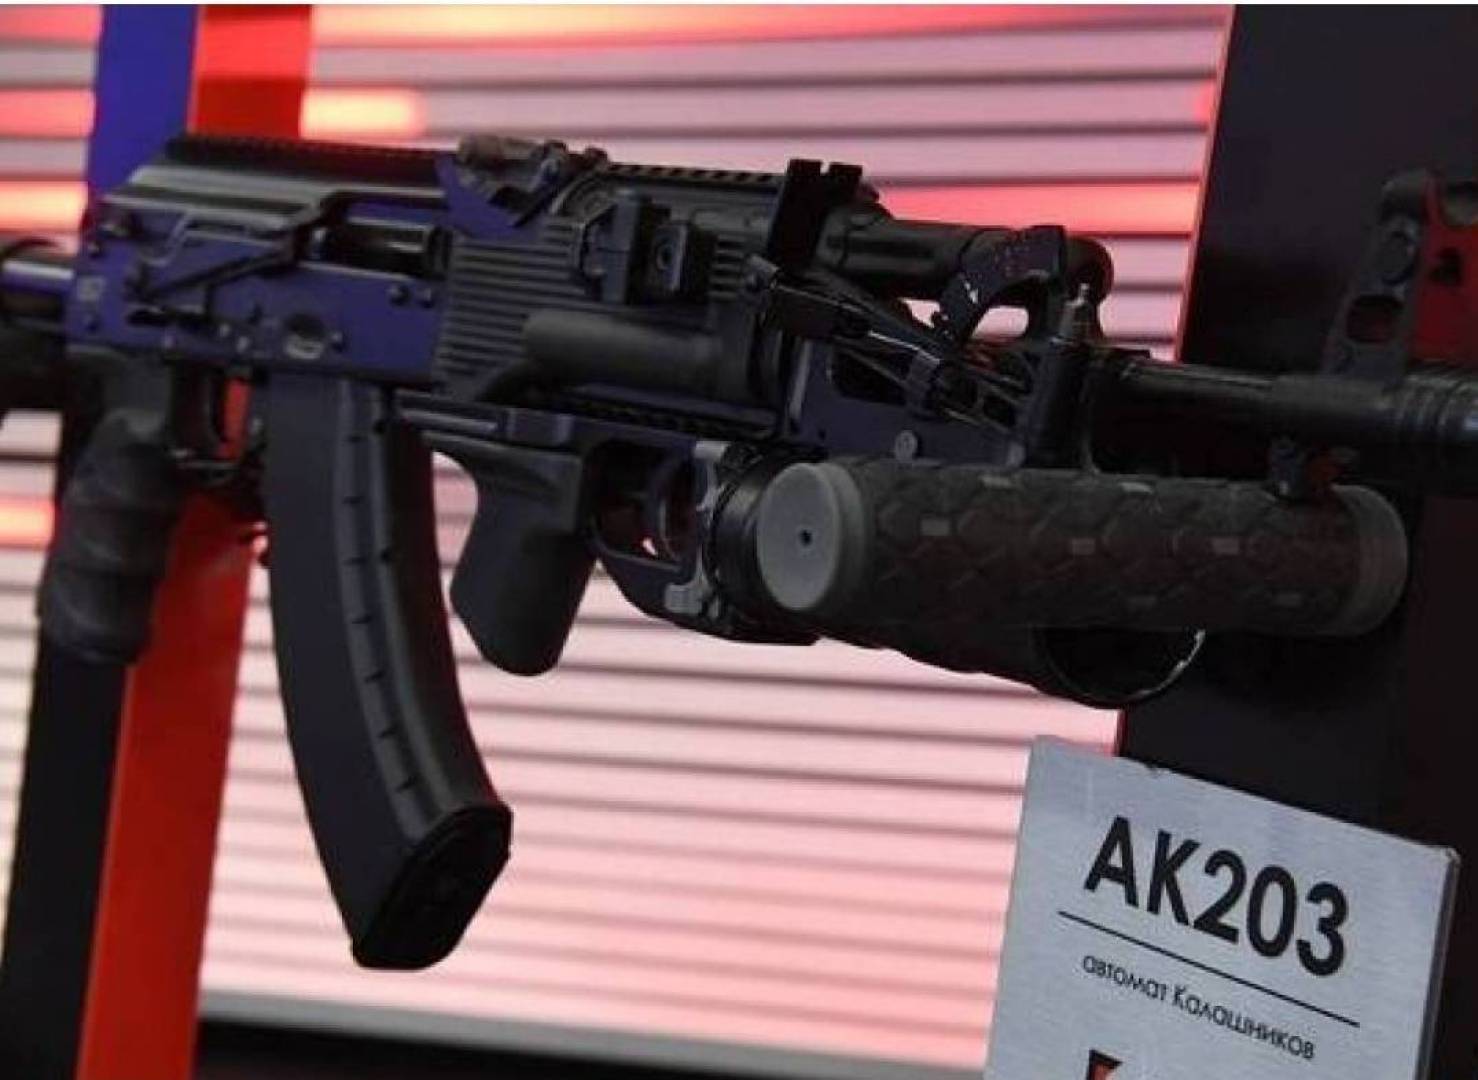 بندقية هجومية روسية حديثة.. لمحة عن مواصفات بندقية كلاشينكوف 203-AK